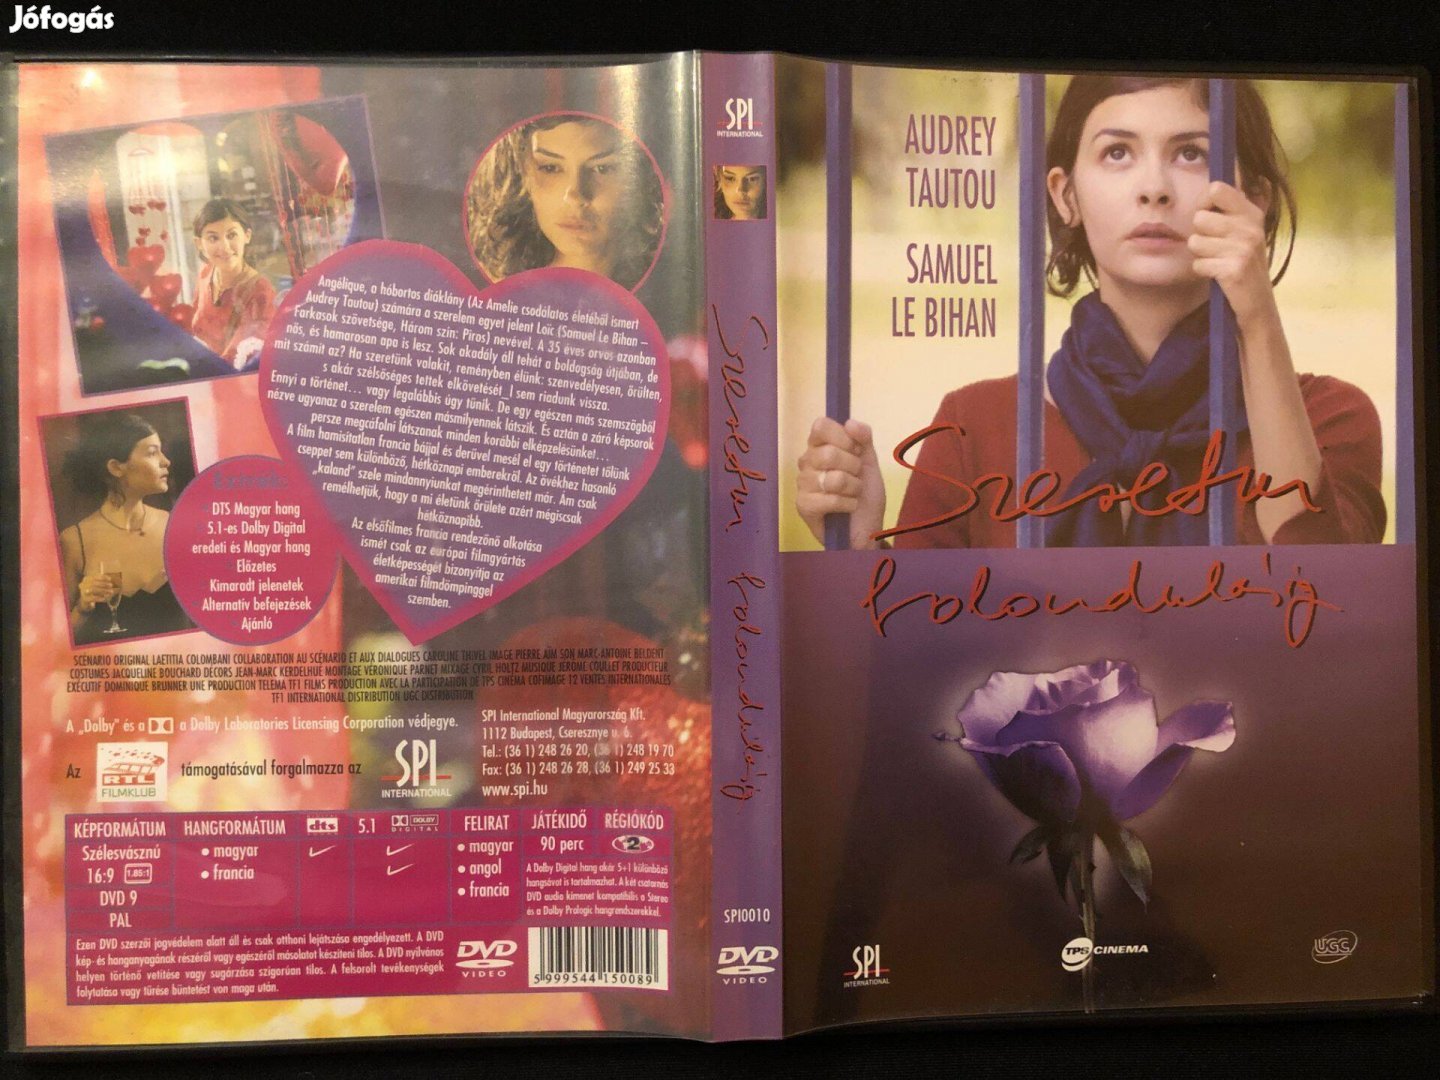 Szeretni bolondulásig (karcmentes, Audrey Tautou, Samuel Le Bihan) DVD